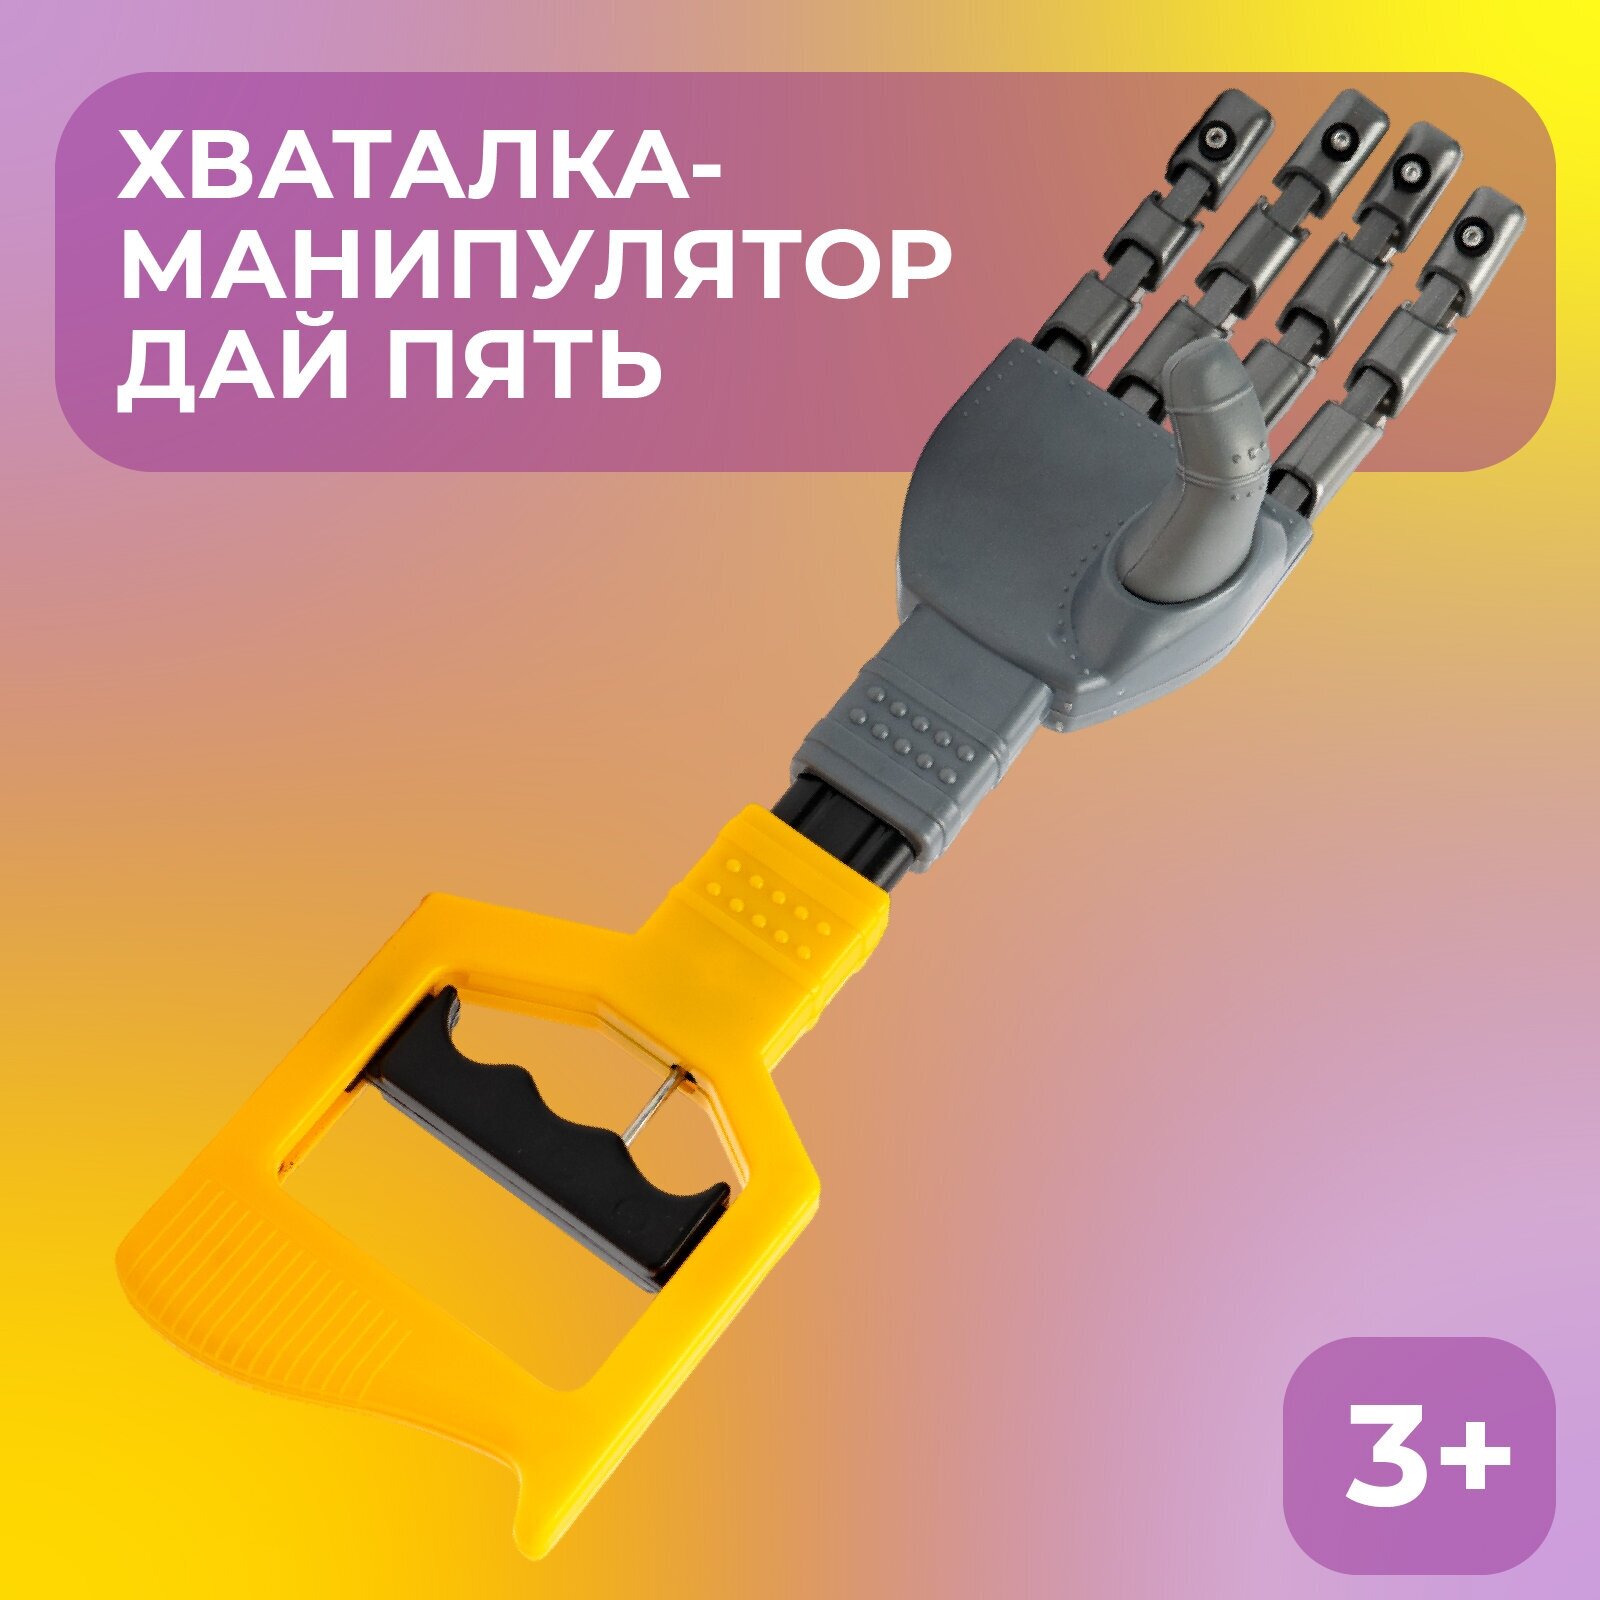 Хваталка-манипулятор "Дай пять", рука робота, размер: 33 см, цвет желтый